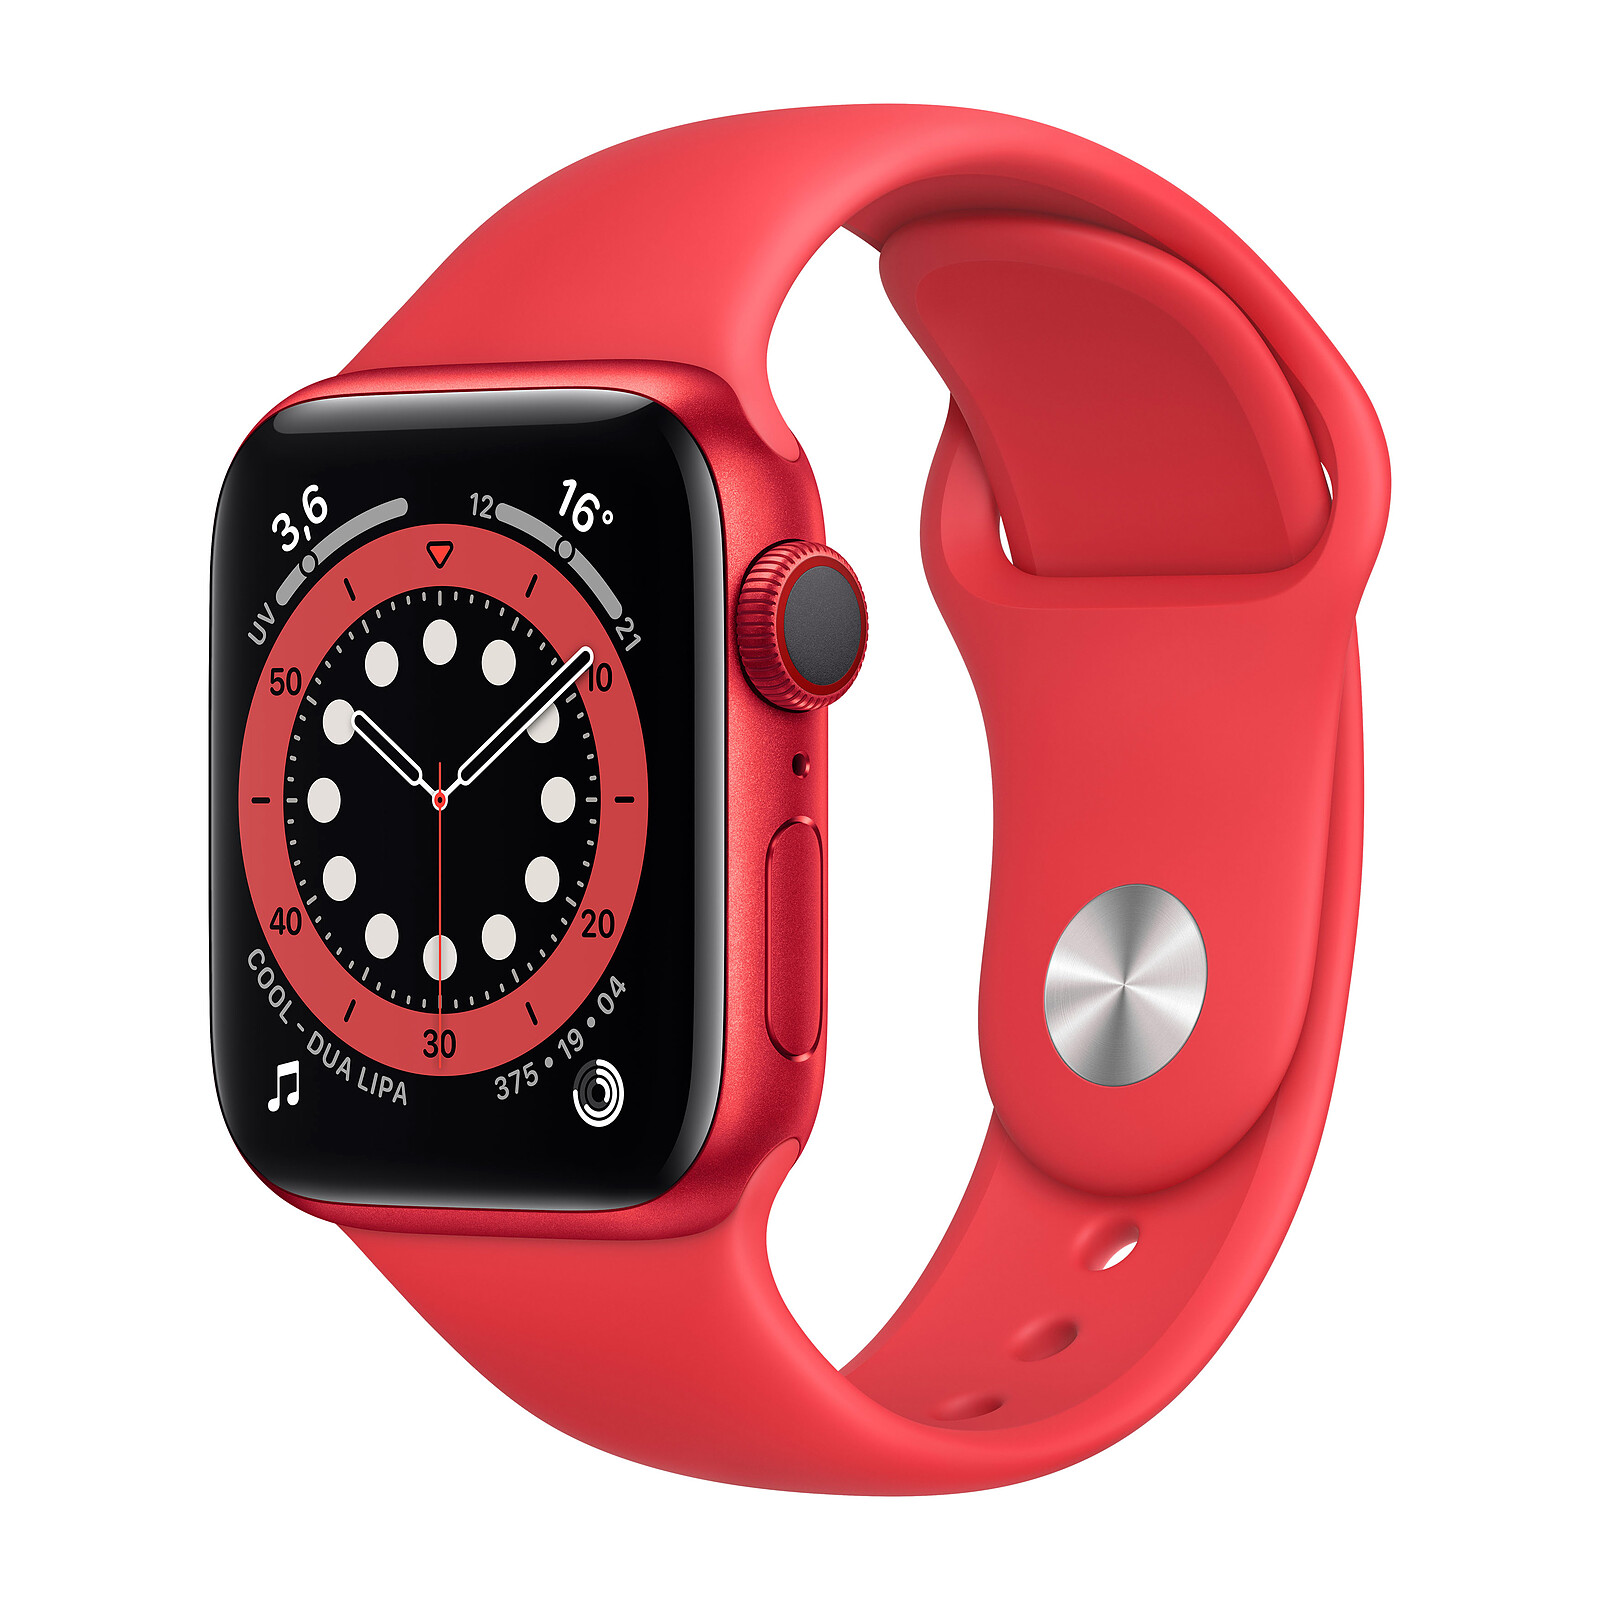 Apple Watch Series 6 : non, le capteur d'oxygène dans le sang n'est pas  reconnu par les médecins